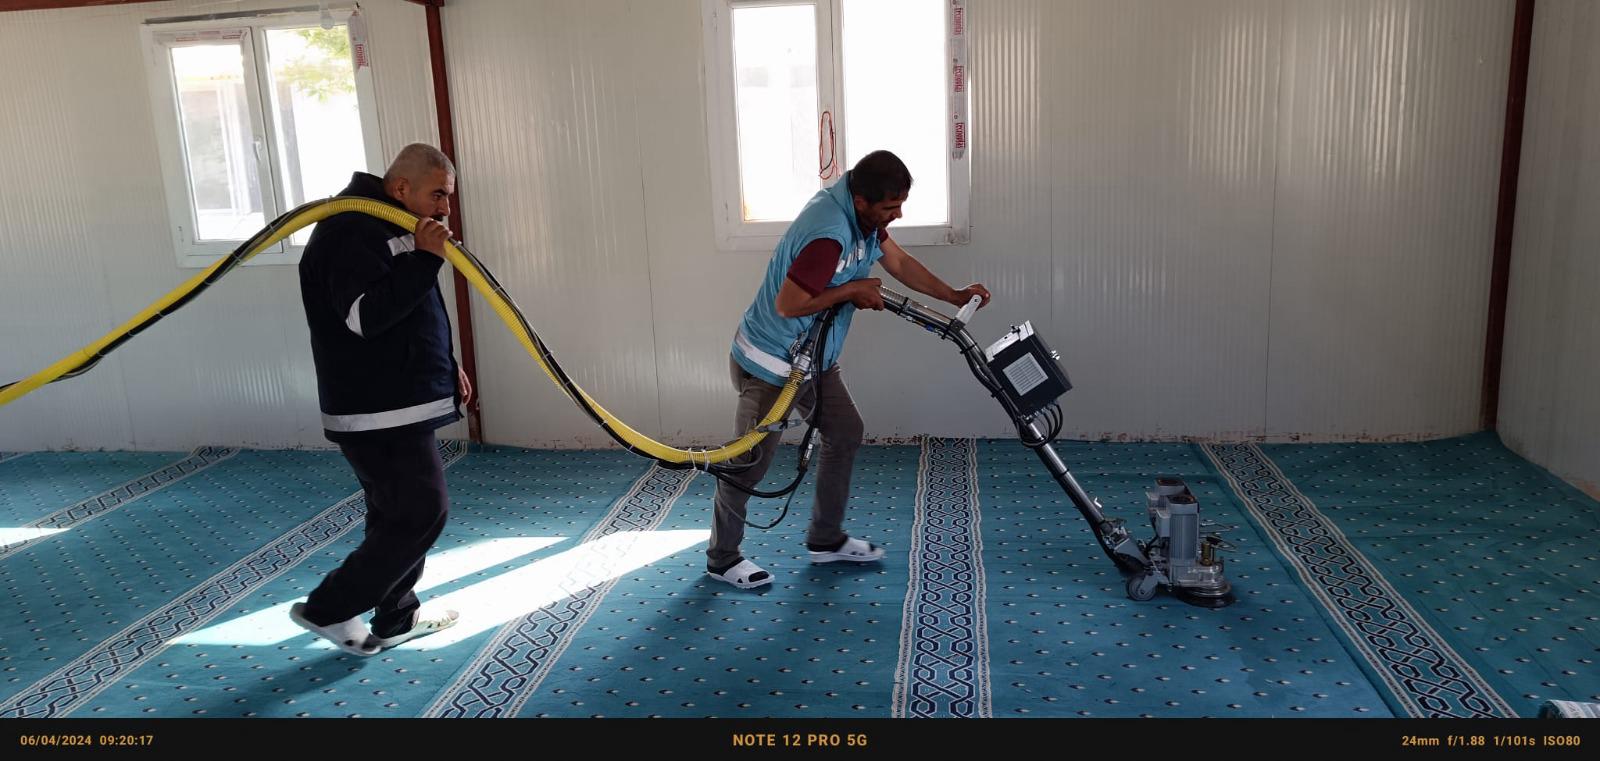 Antakya Belediyesi, Türkiye'de sadece 4 adet bulunan özel araç ile ibadethanelerde periyodik temizlik çalışmaları yürütüyor.